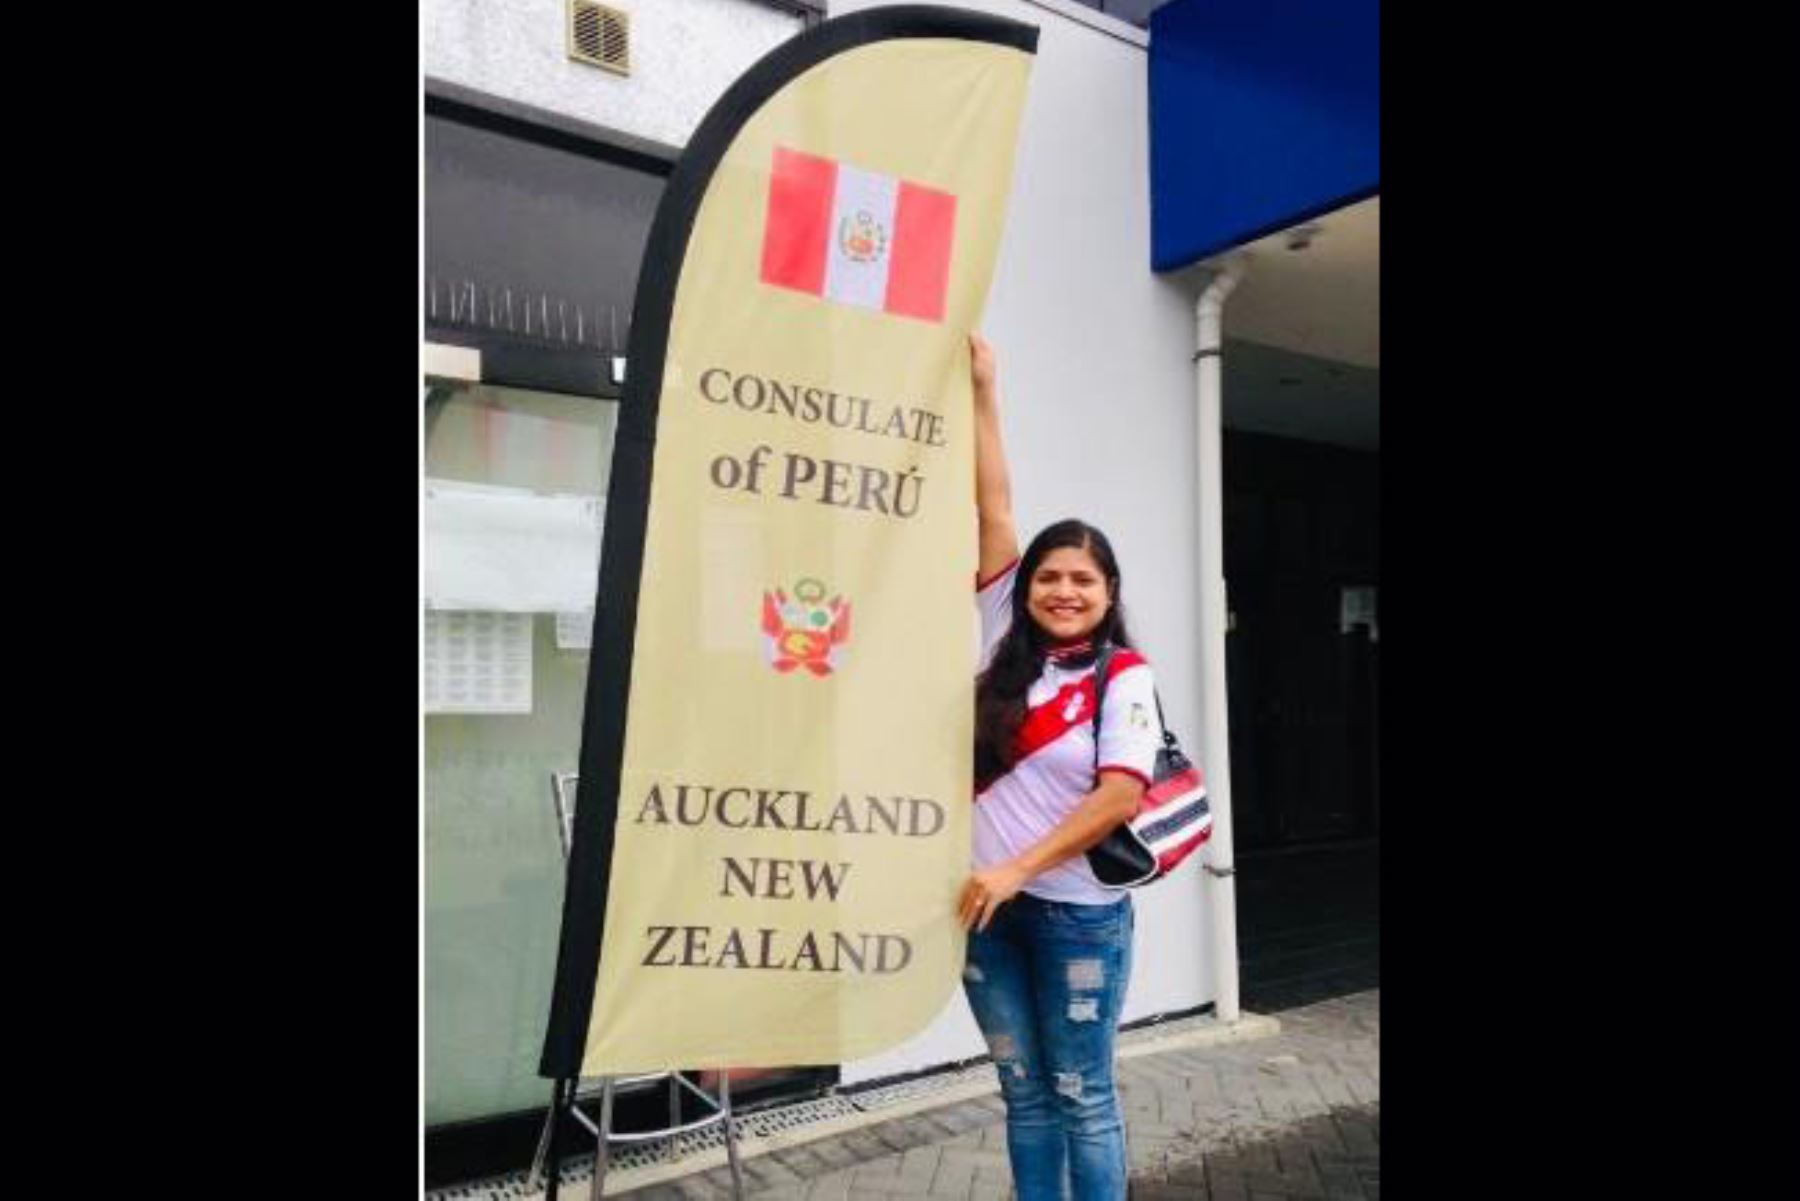 NuevaZelanda culminó el proceso de votación del Referéndum 2018, donde un aproximado de 200 peruanos sufragaron en la ciudad de Auckland. (Fotos:ONDADIGITALTV)